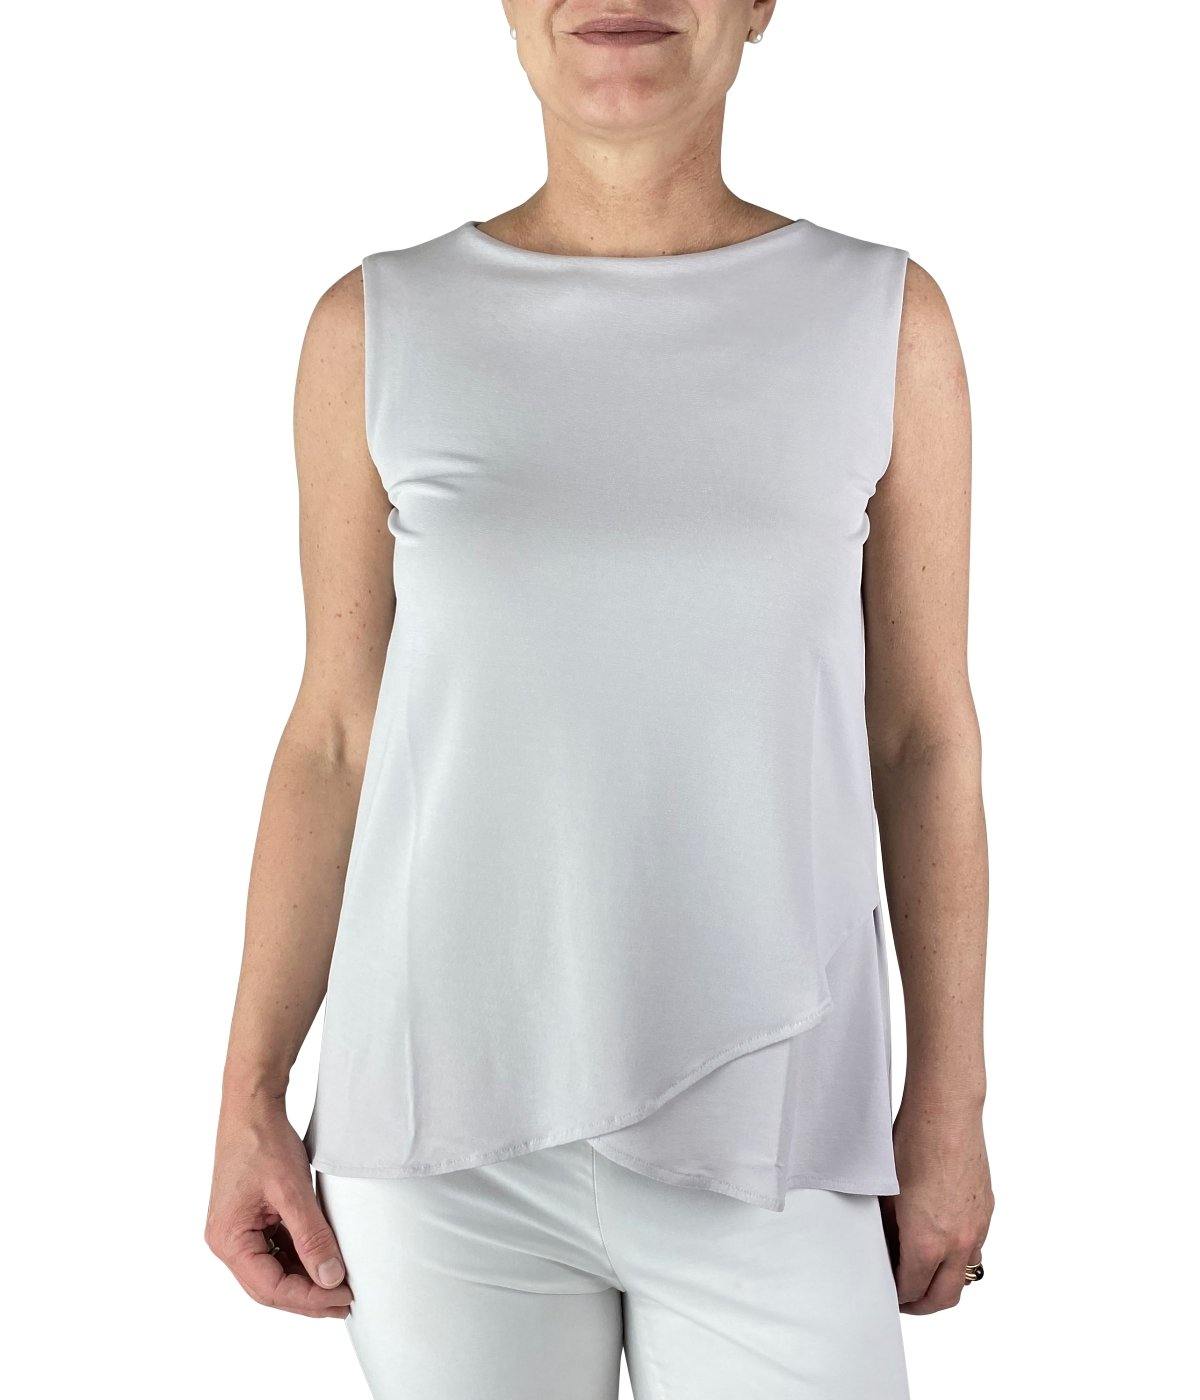 Kimmich Trikot Shirts online kaufen Top in silber aus feiner Viskosestretchqualität mit edlem Volantabschluß und feminin schmalem Schnitt online bestellen